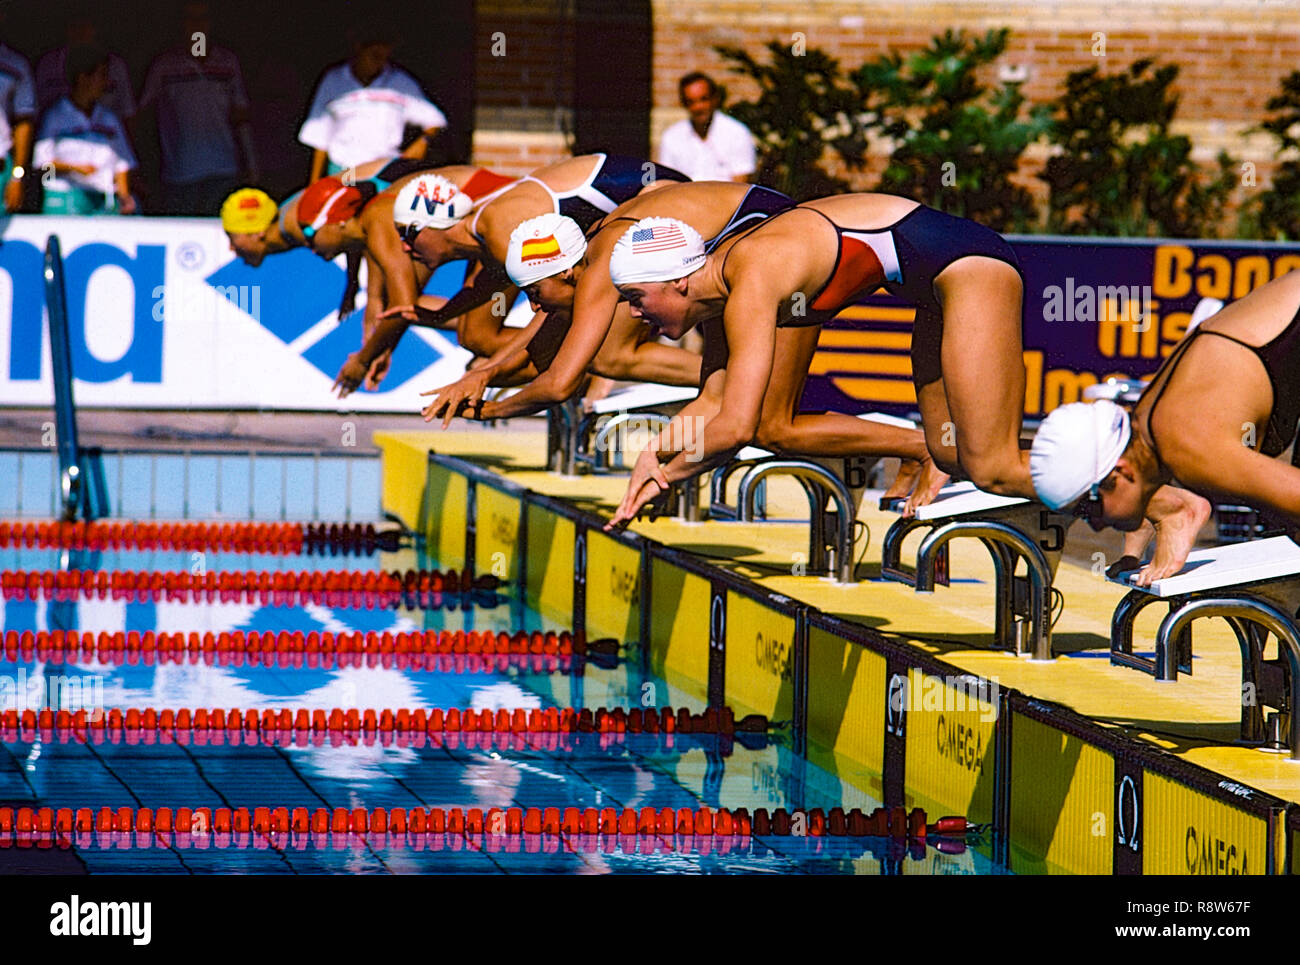 Nuotatori allo start della gara Foto Stock